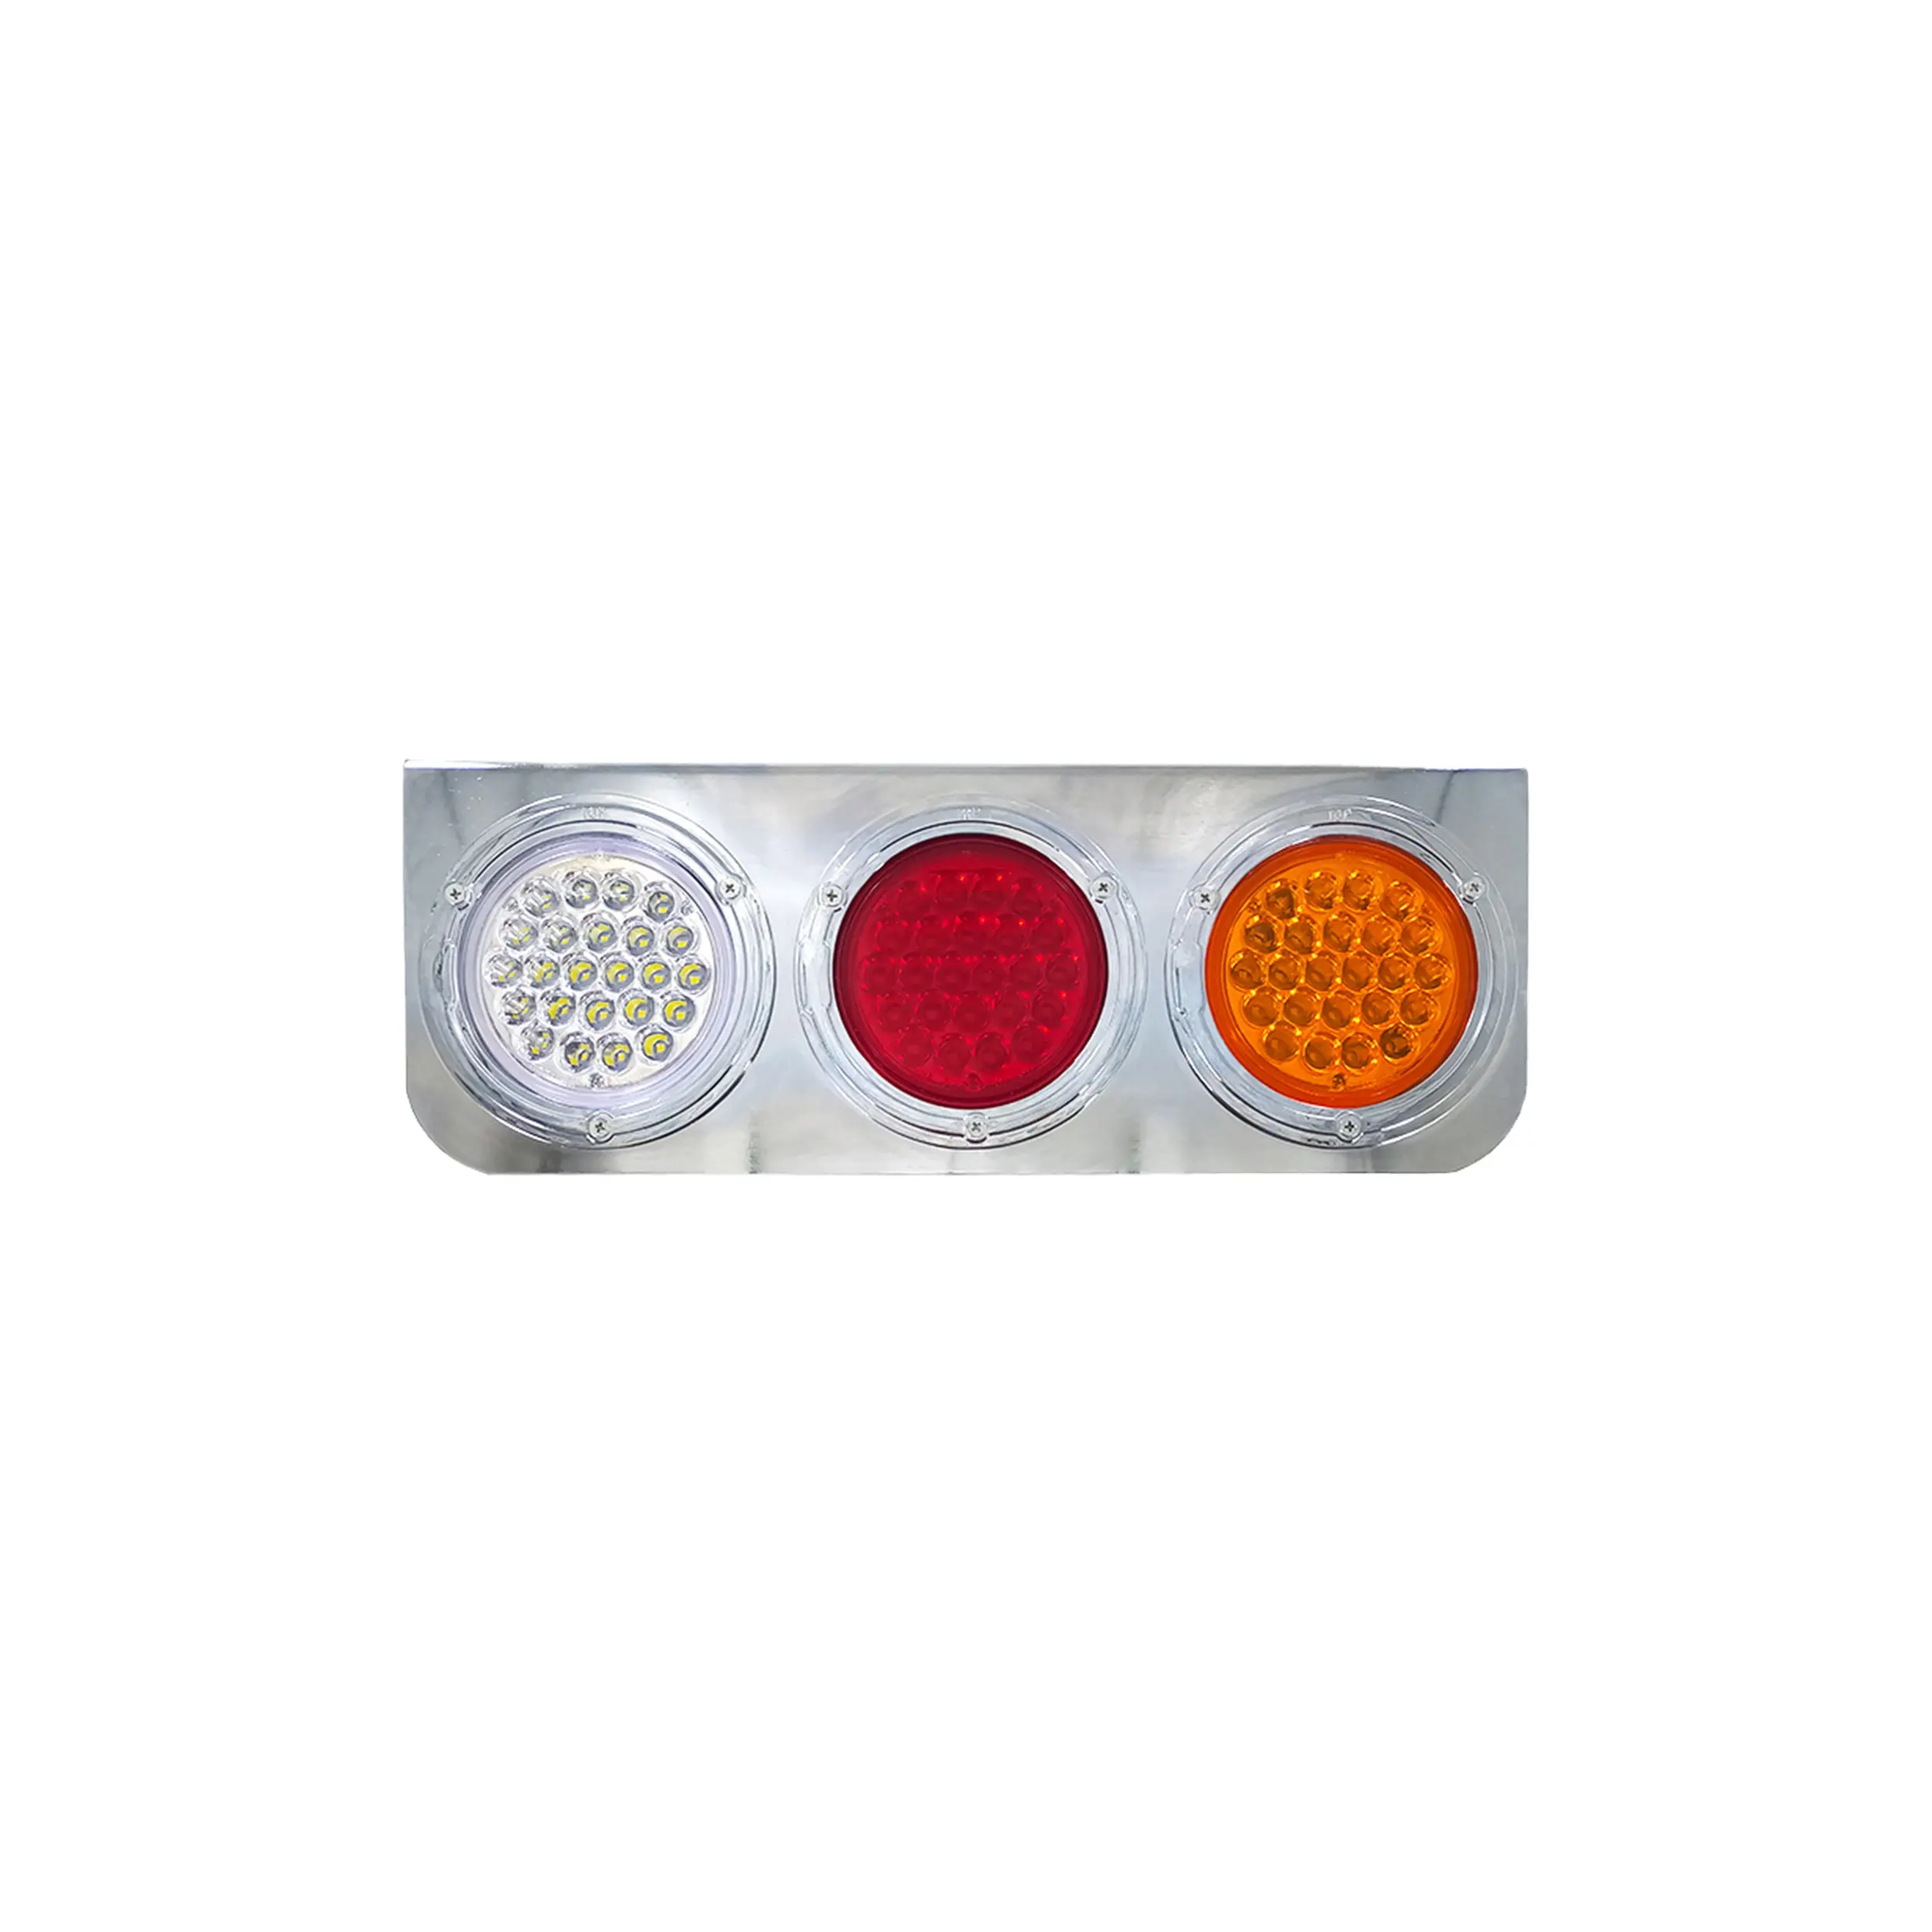 A basso prezzo impermeabile LED indicatore rettangolare/Stop/retromarcia posteriore luce automobilistica per camion rimorchio TM-A015